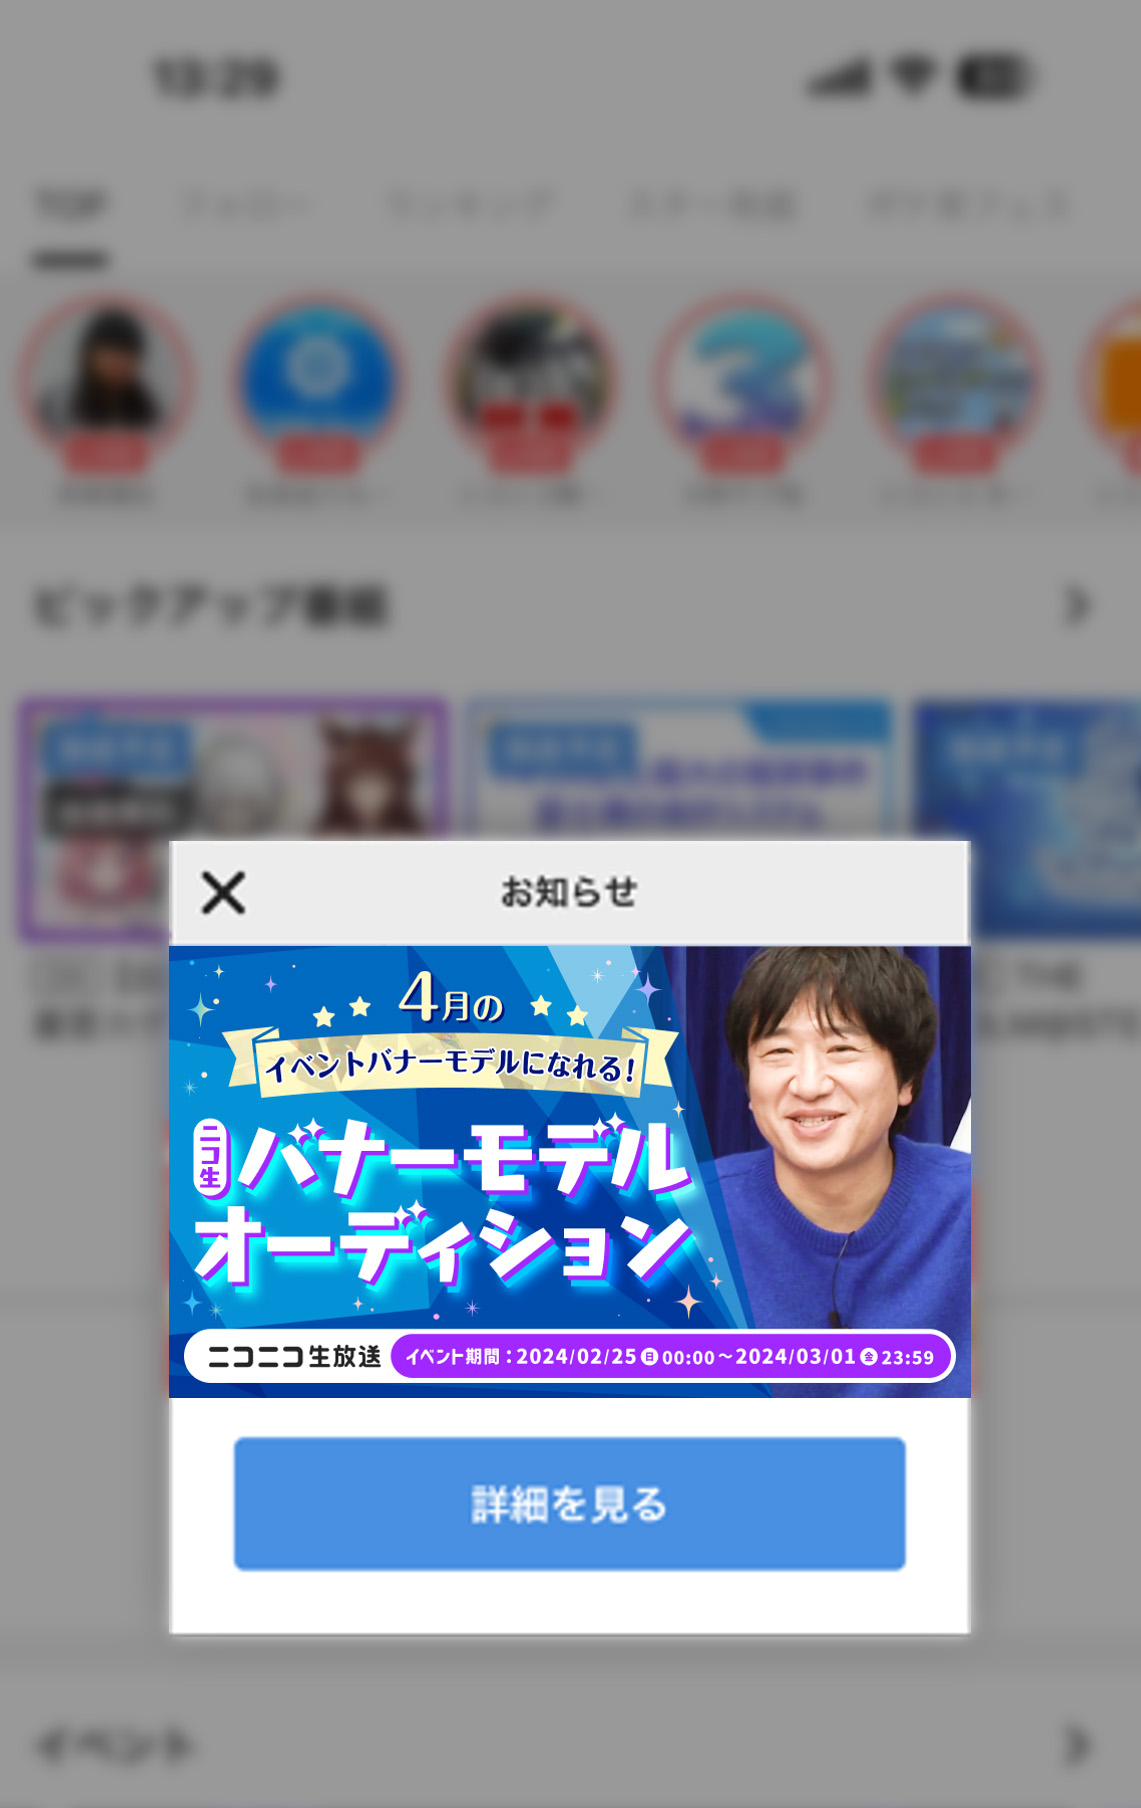 4.生放送アプリ起動バナー